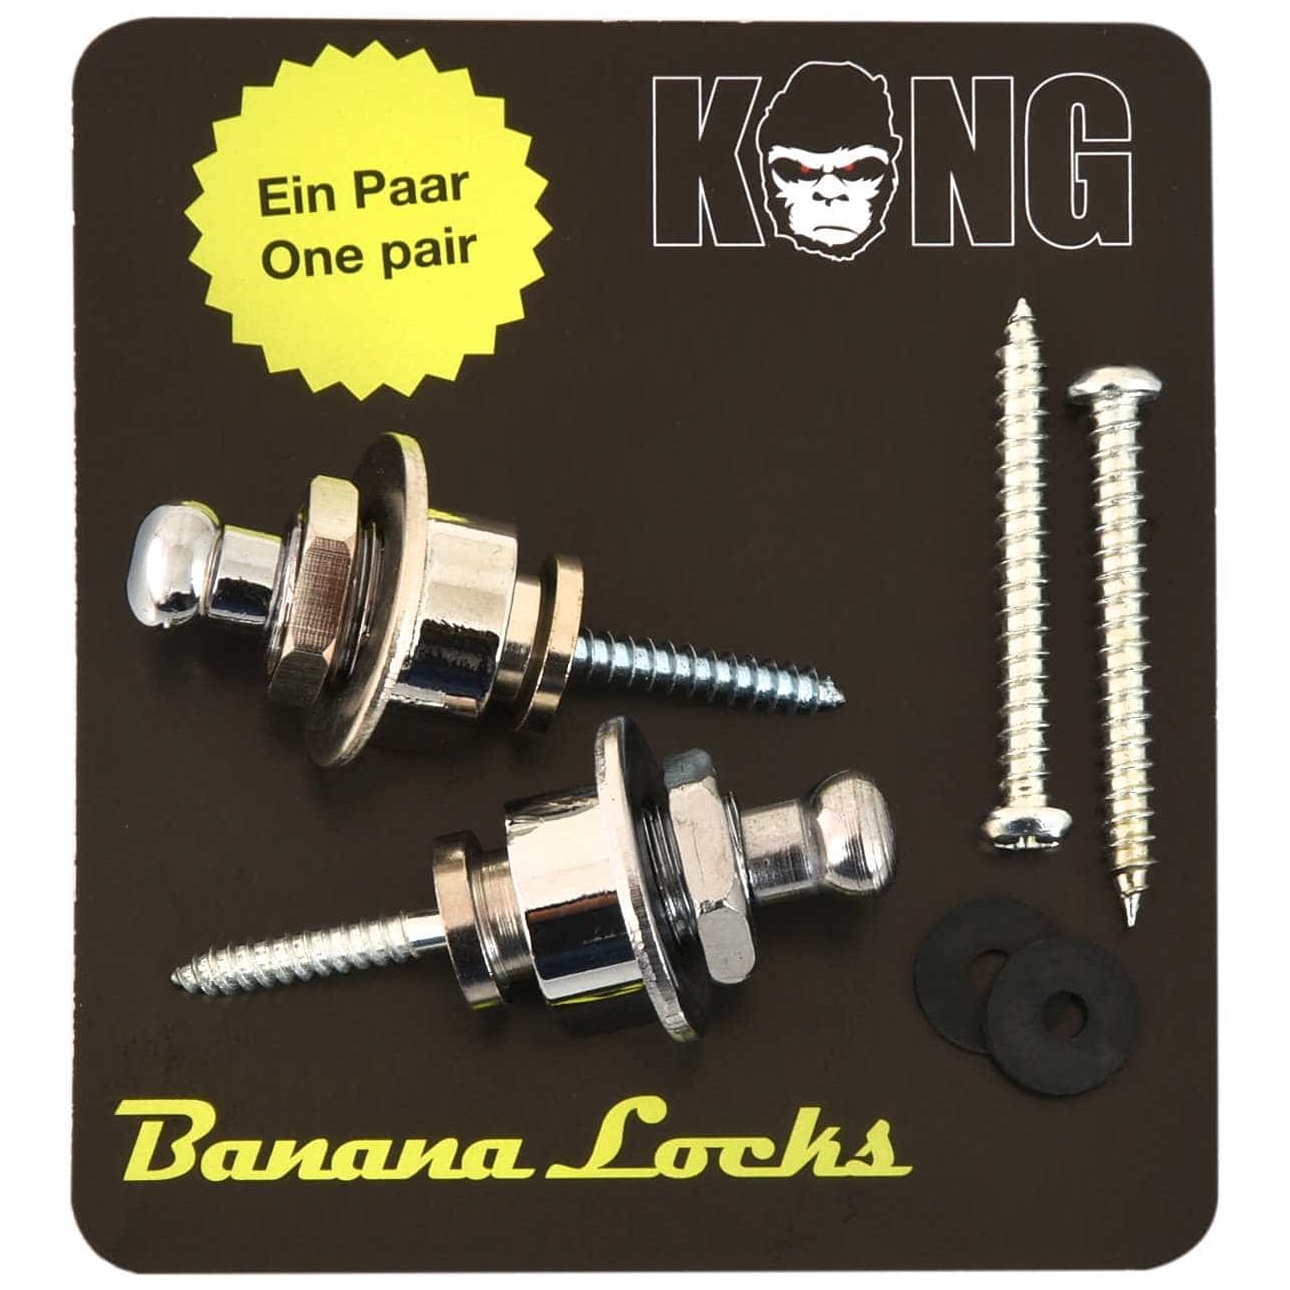 Kong Banana Locks Chrom